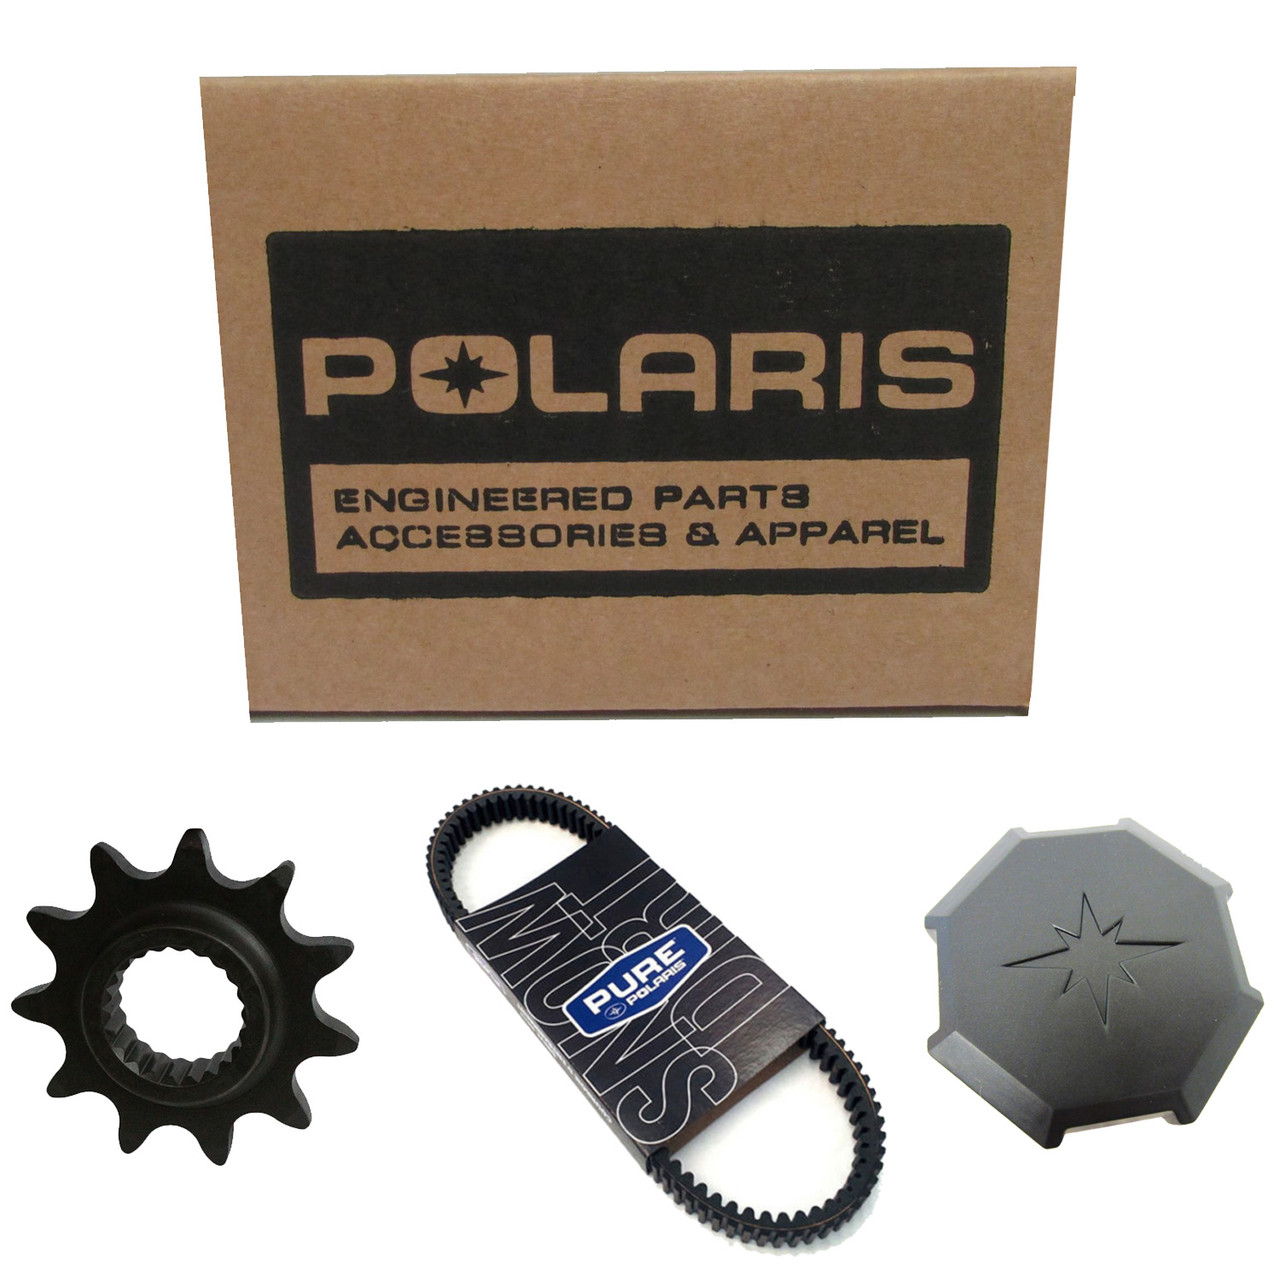 Polaris New OEM K-Accy,Worklight, 2889672